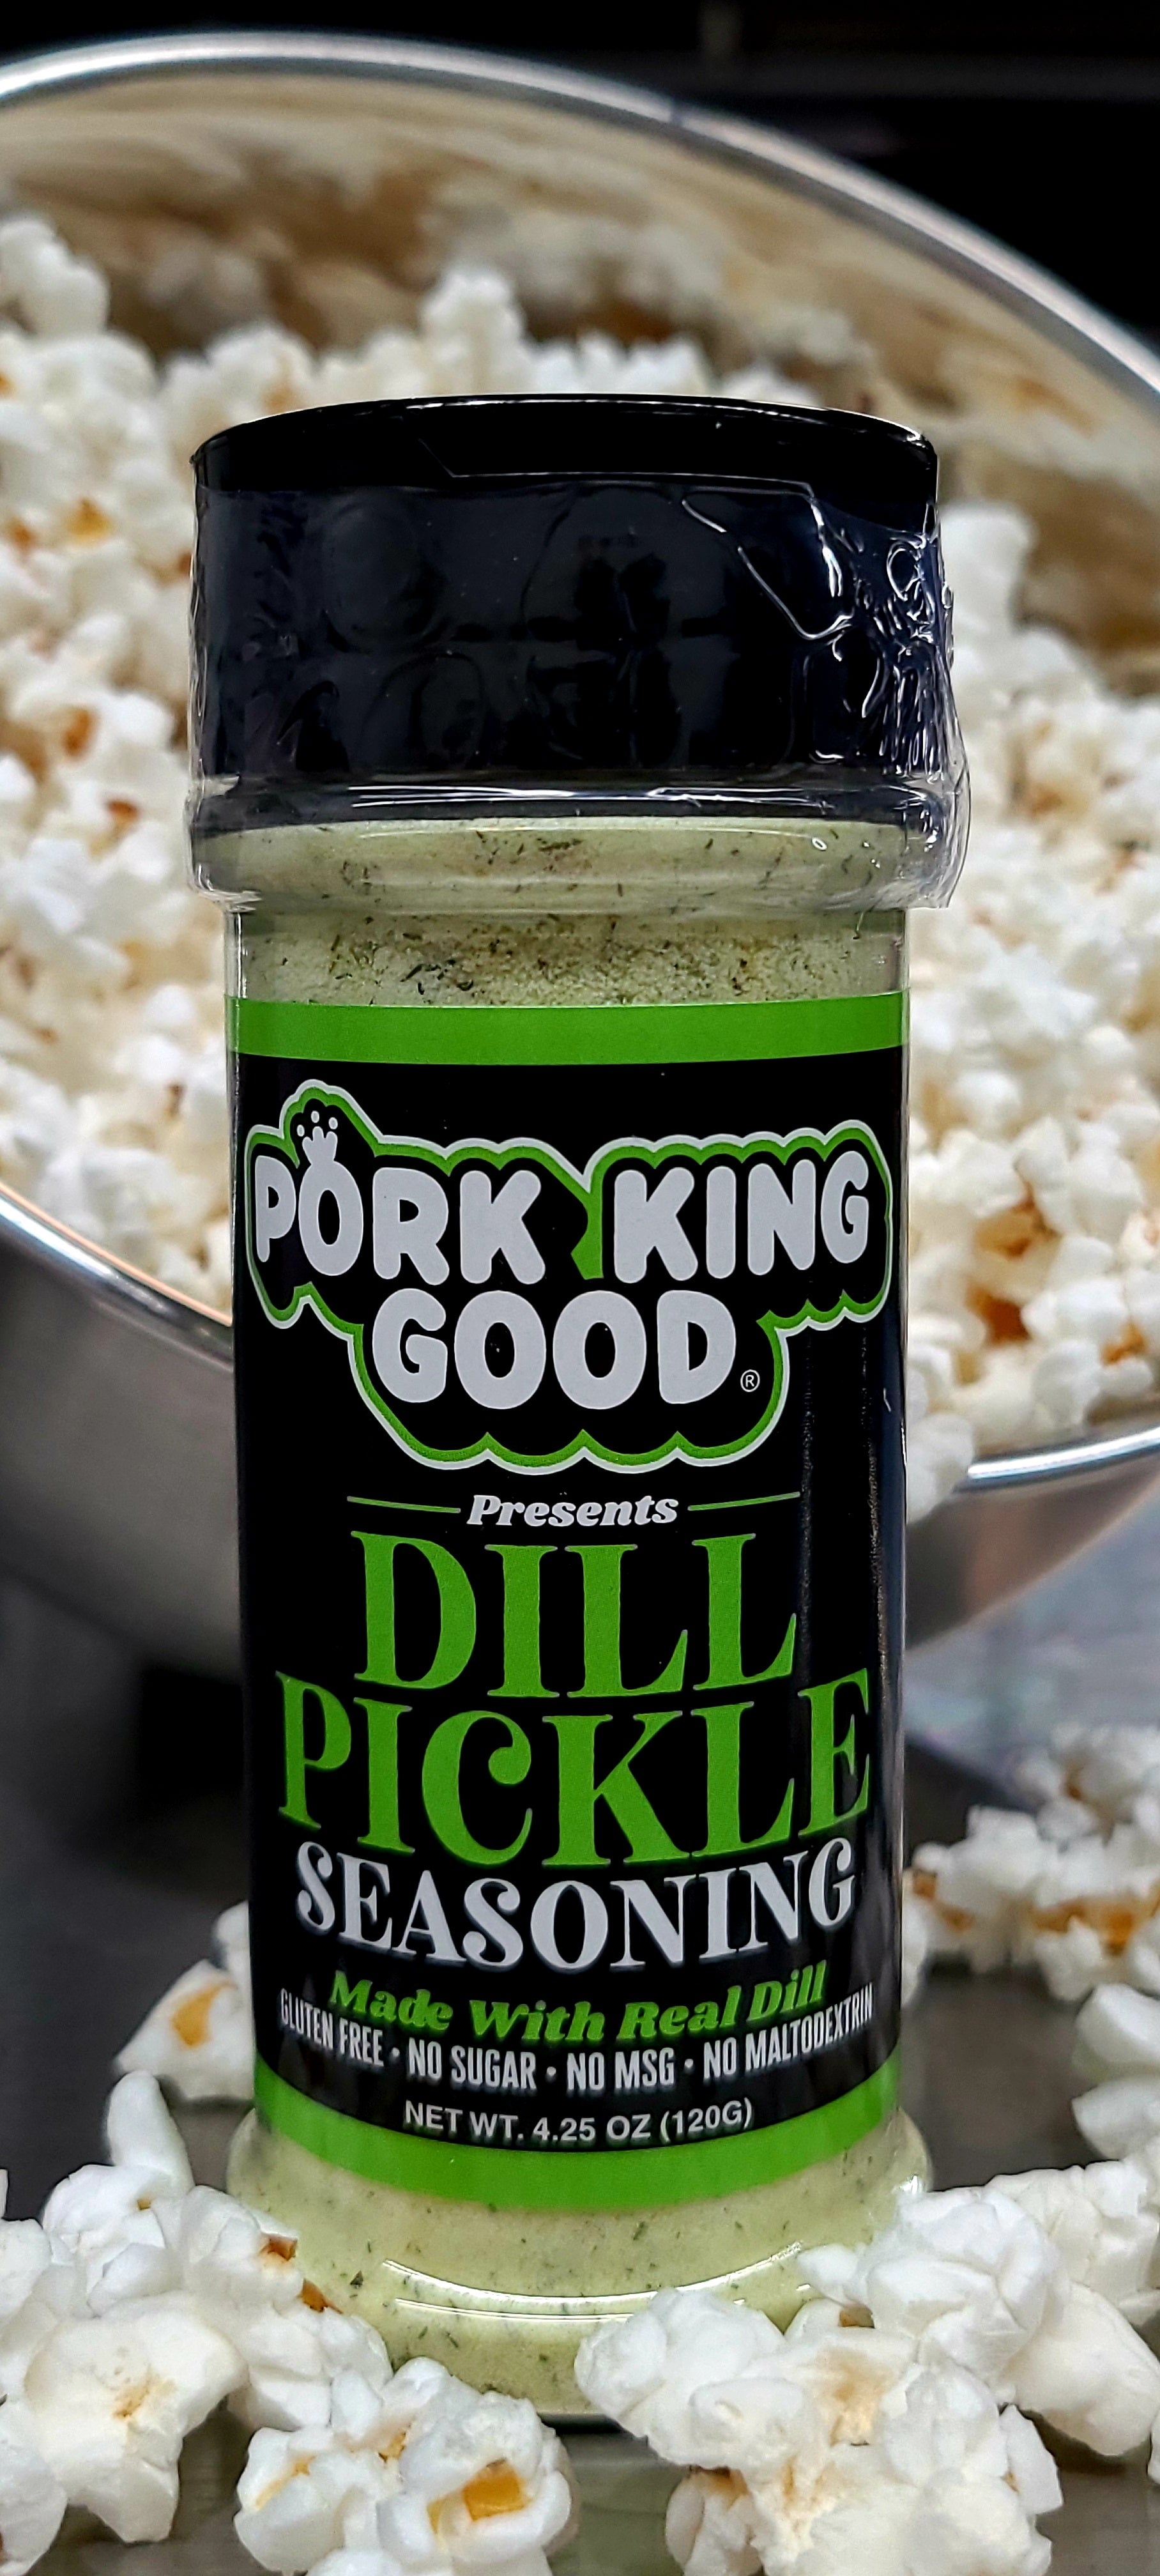 New pickle seasoning : r/traderjoes